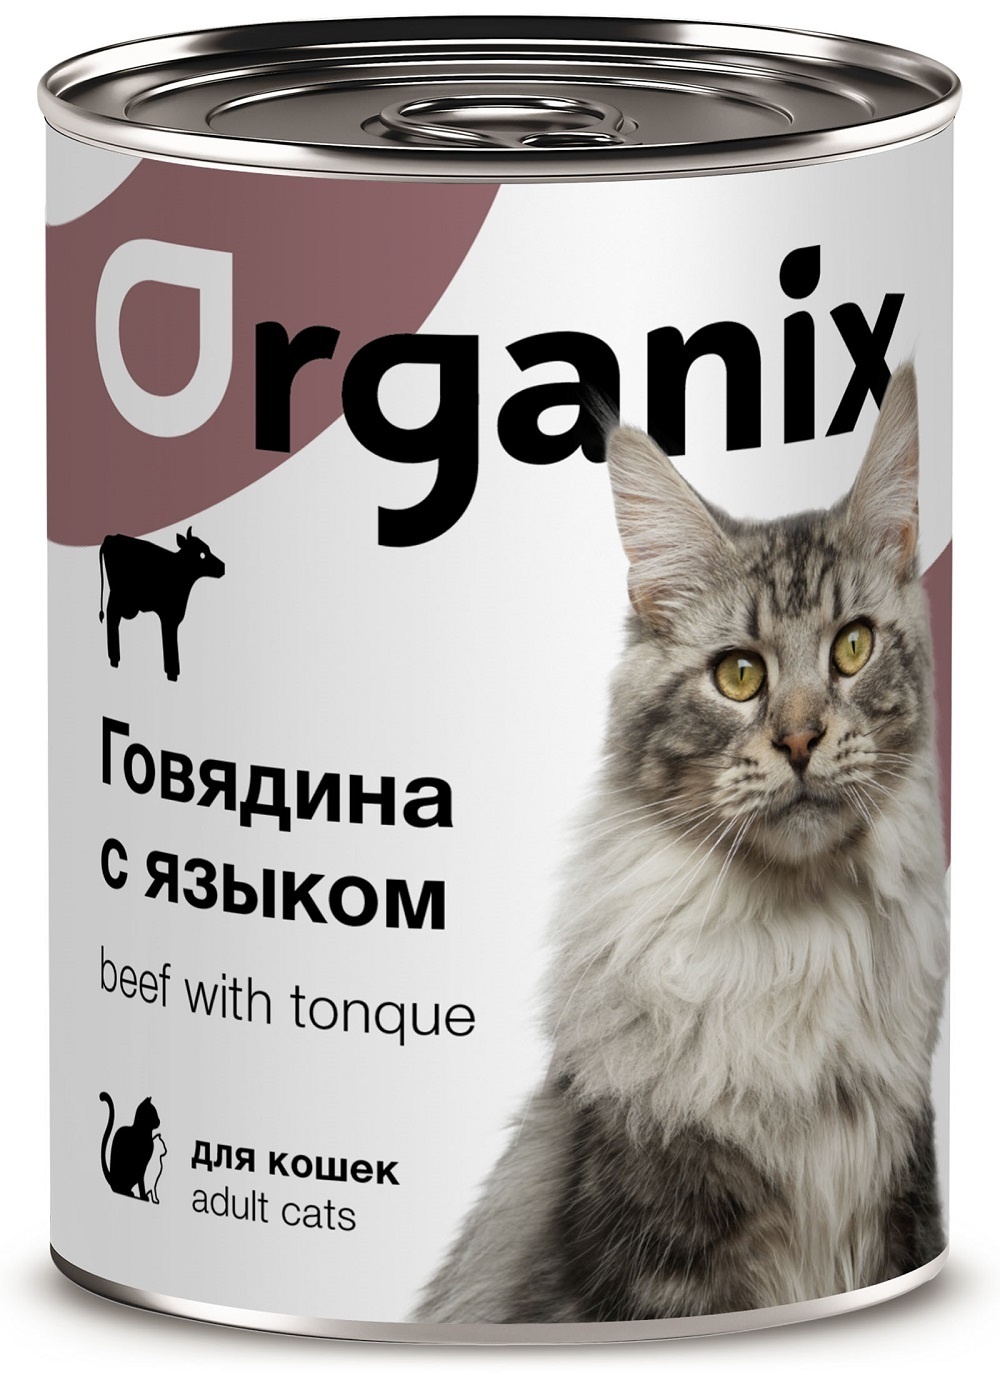 Organix консервы Organix консервы с говядиной и языком для кошек (410 г) organix консервы organix консервы с говядиной и языком для кошек 410 г